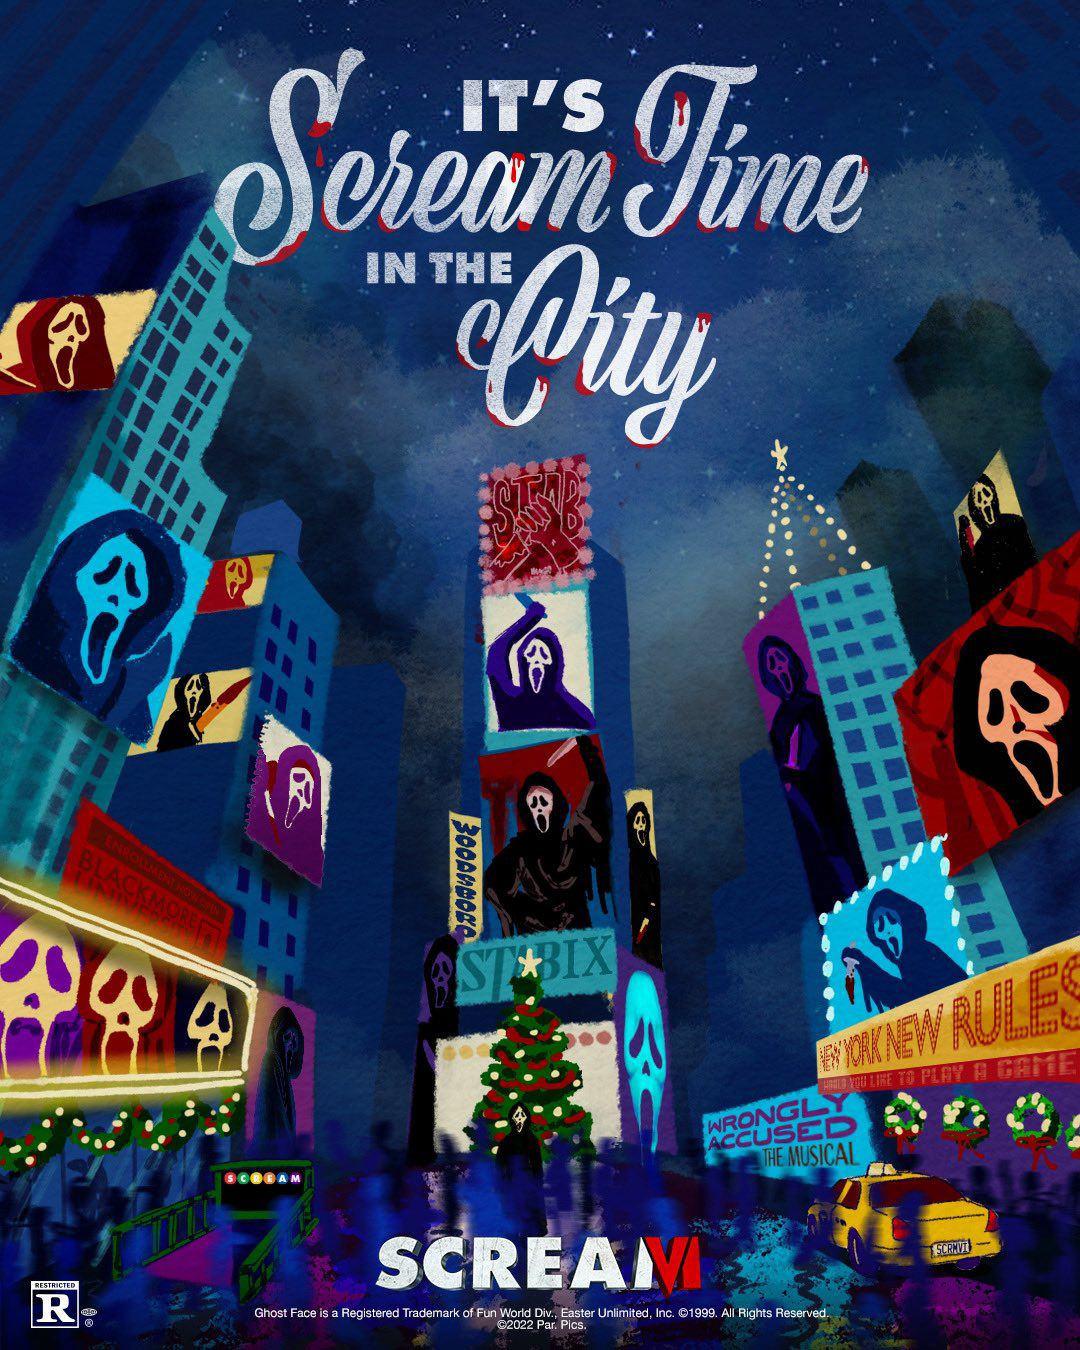 پوستر فیلم Scream VI با حال و هوای کریسمس